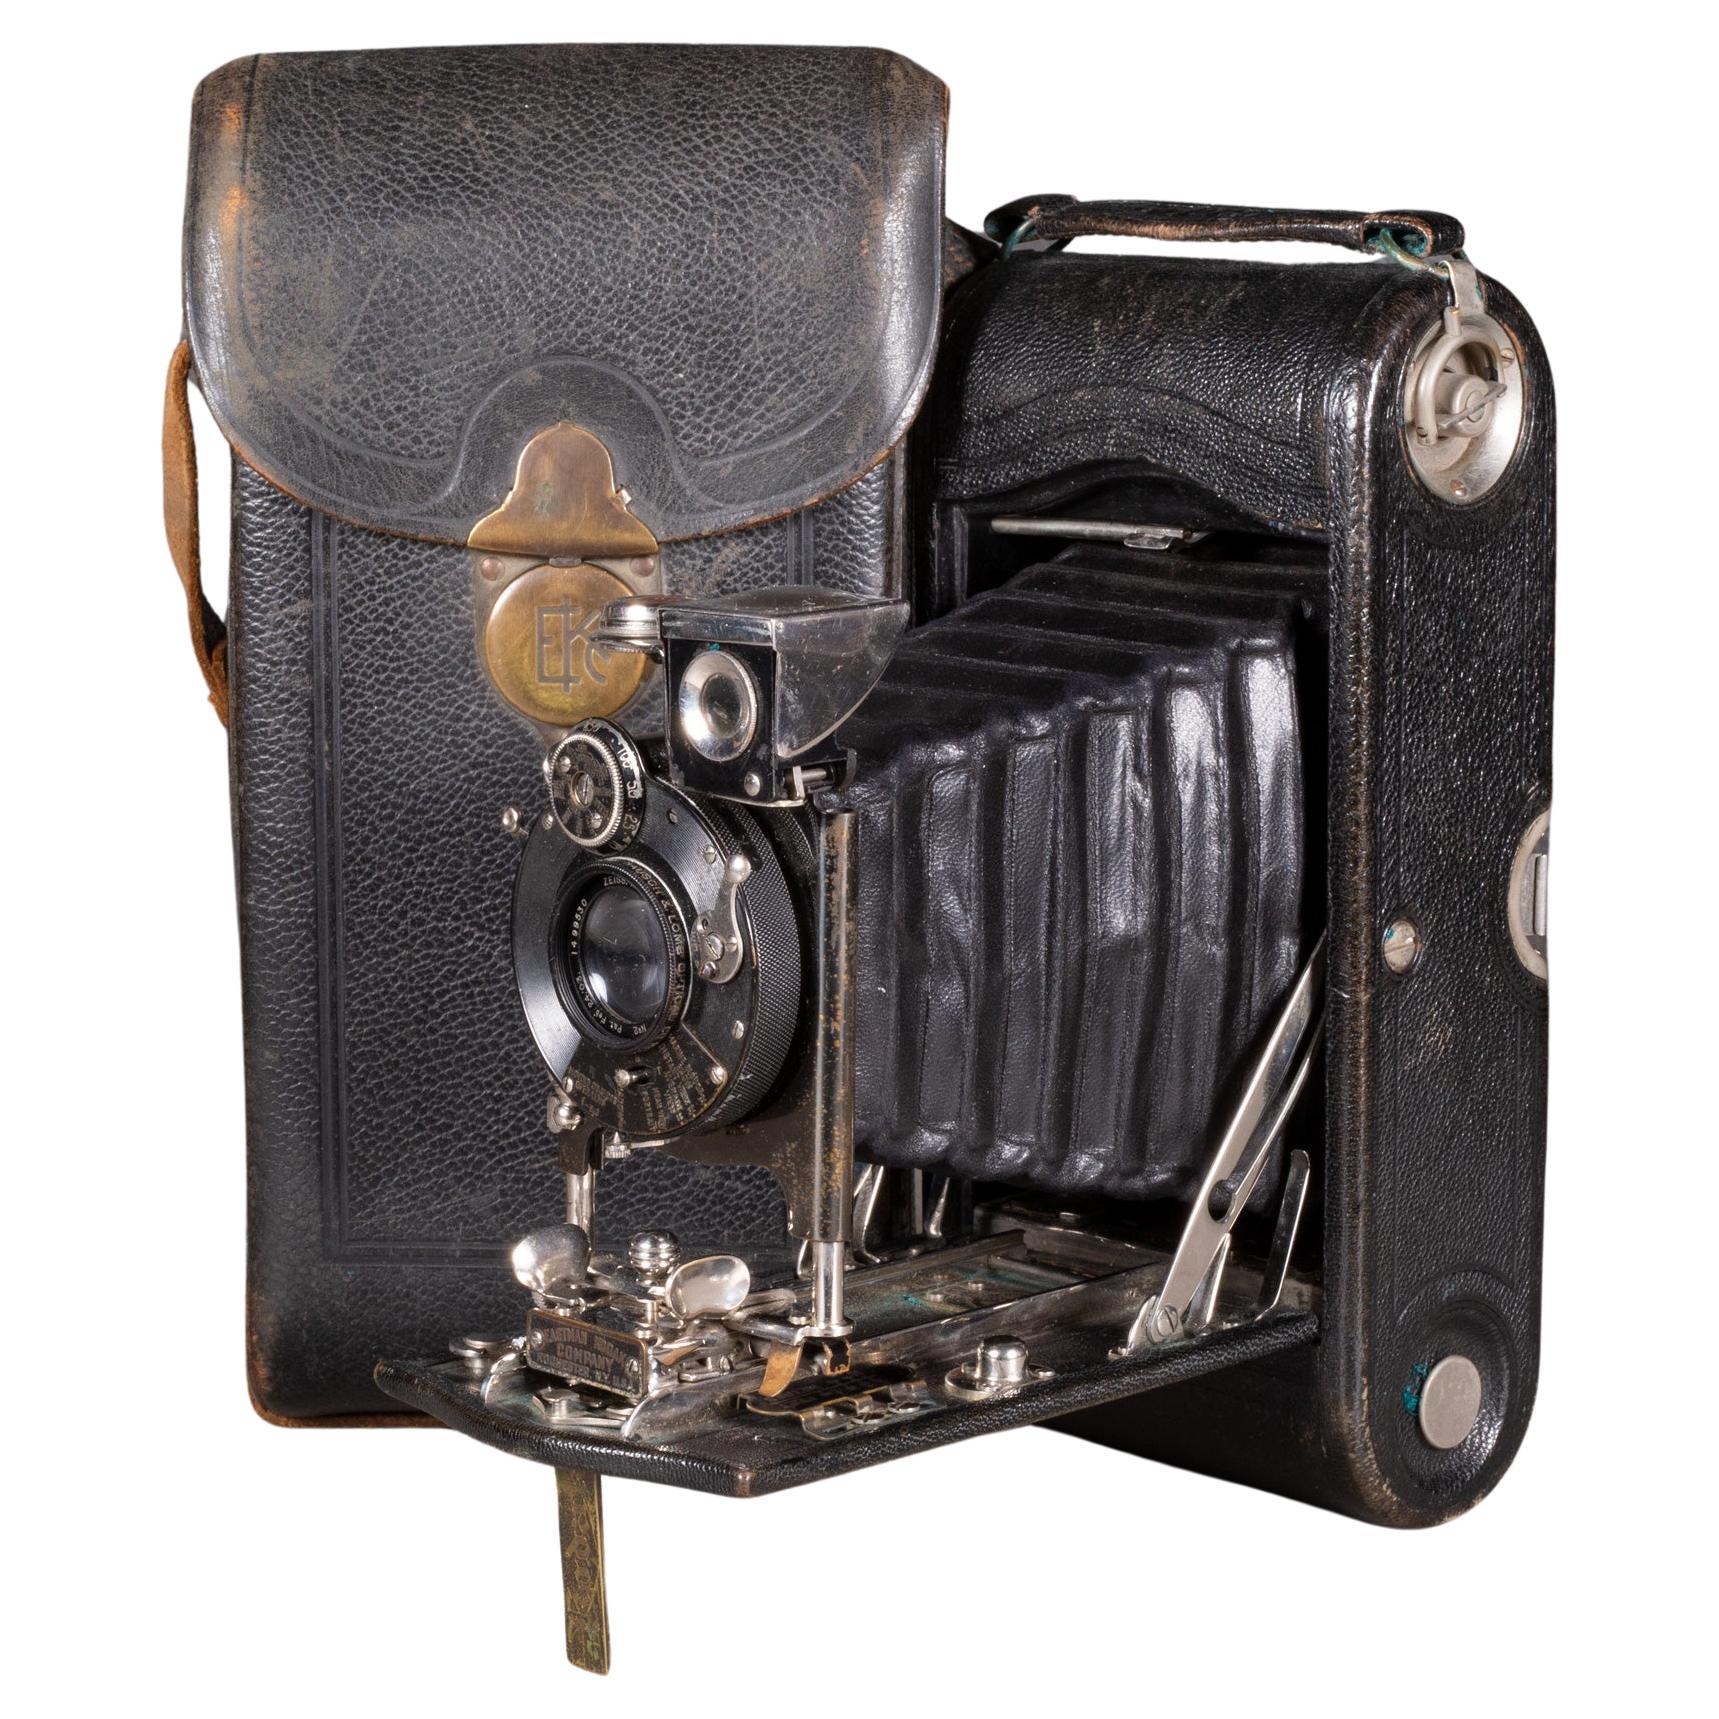 Große Kodak No. 2 Klappbare Kamera mit Ledergehäuse c.1903 (FREE SHIPPING)